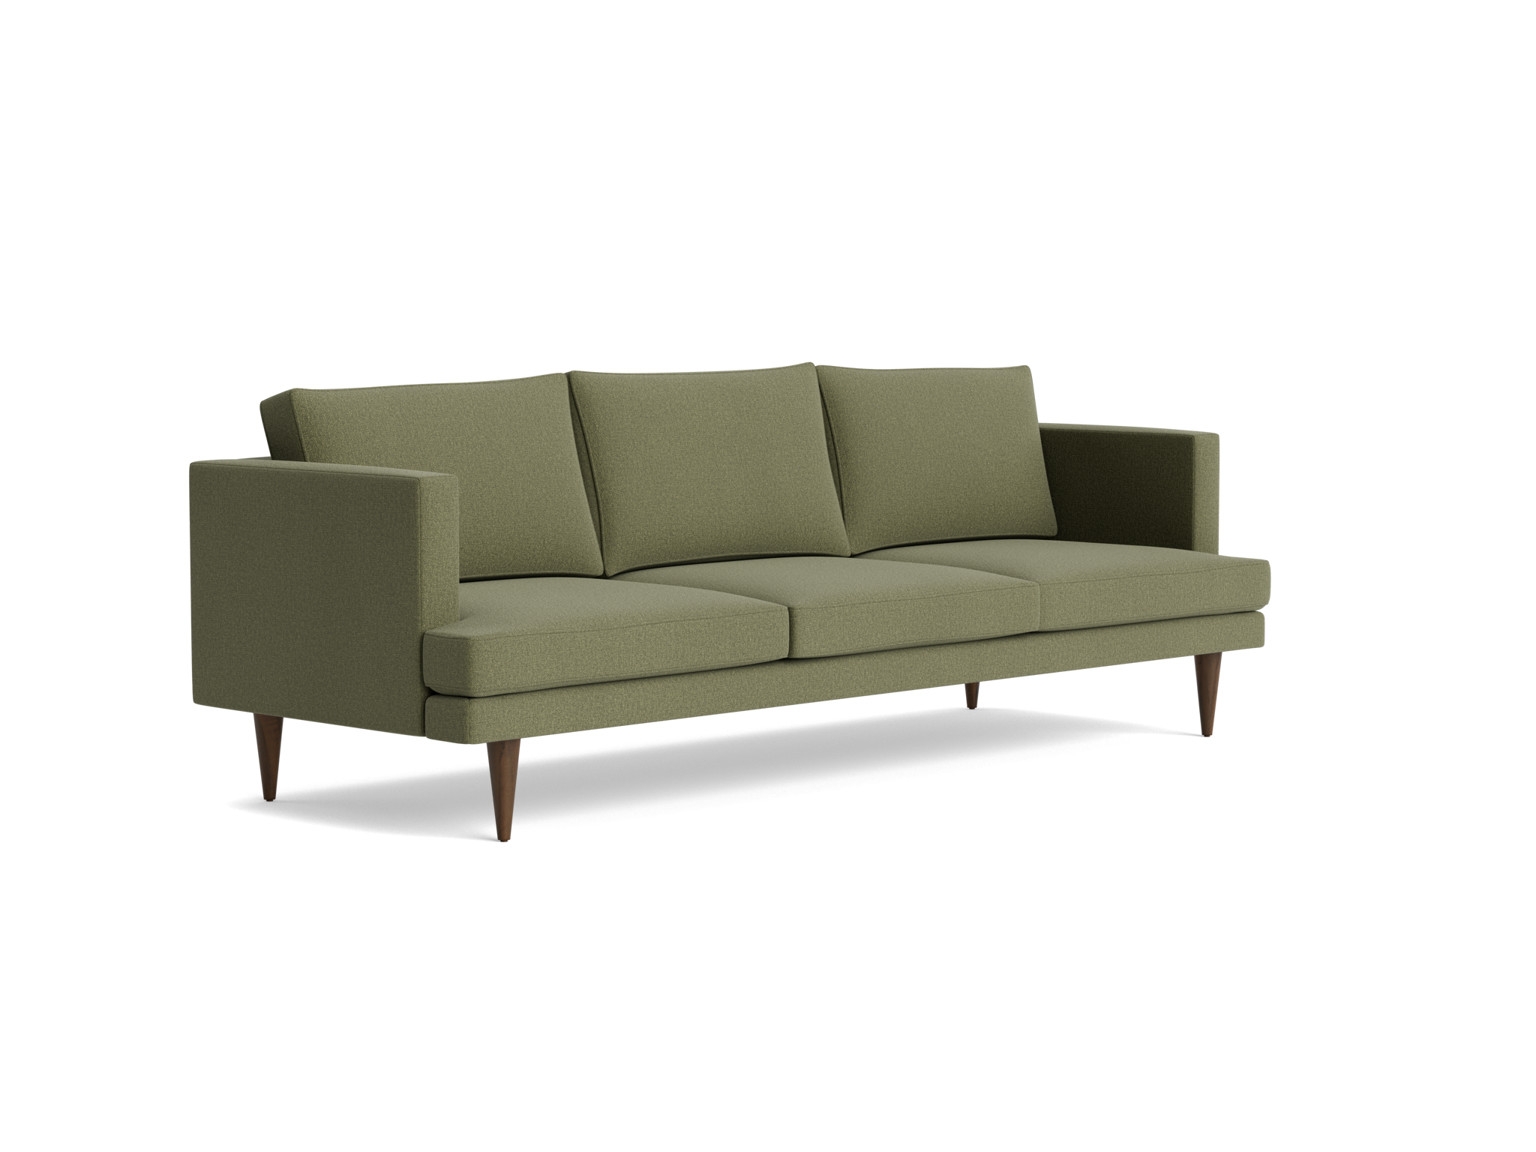 Preston Grand Sofa - Faithful Olive - Image 1